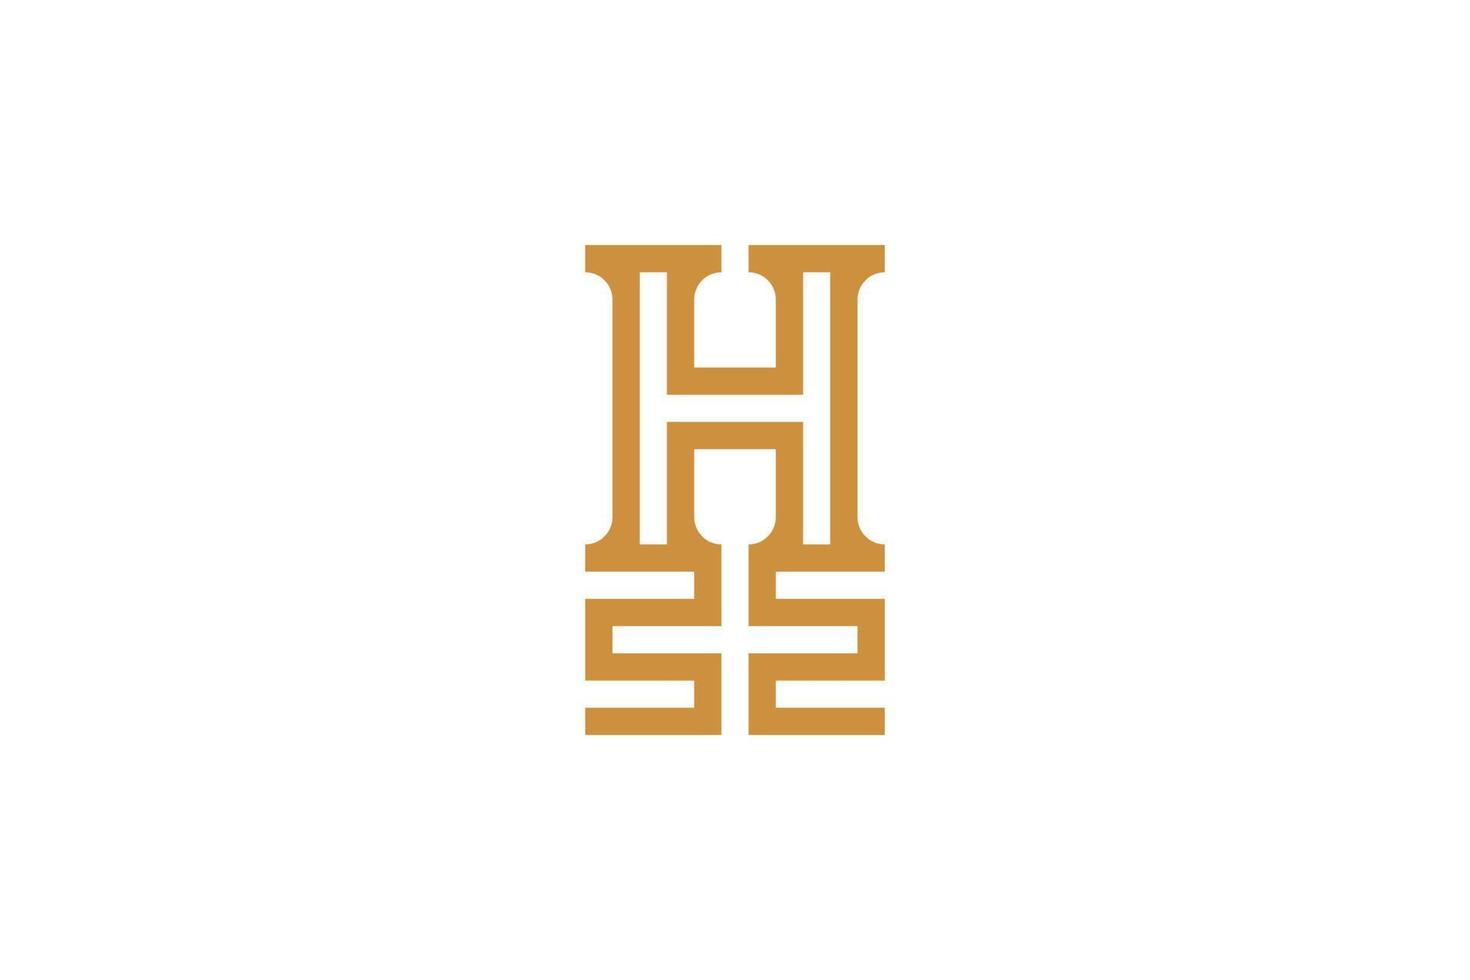 logotipo de la letra h dibujada a mano vector